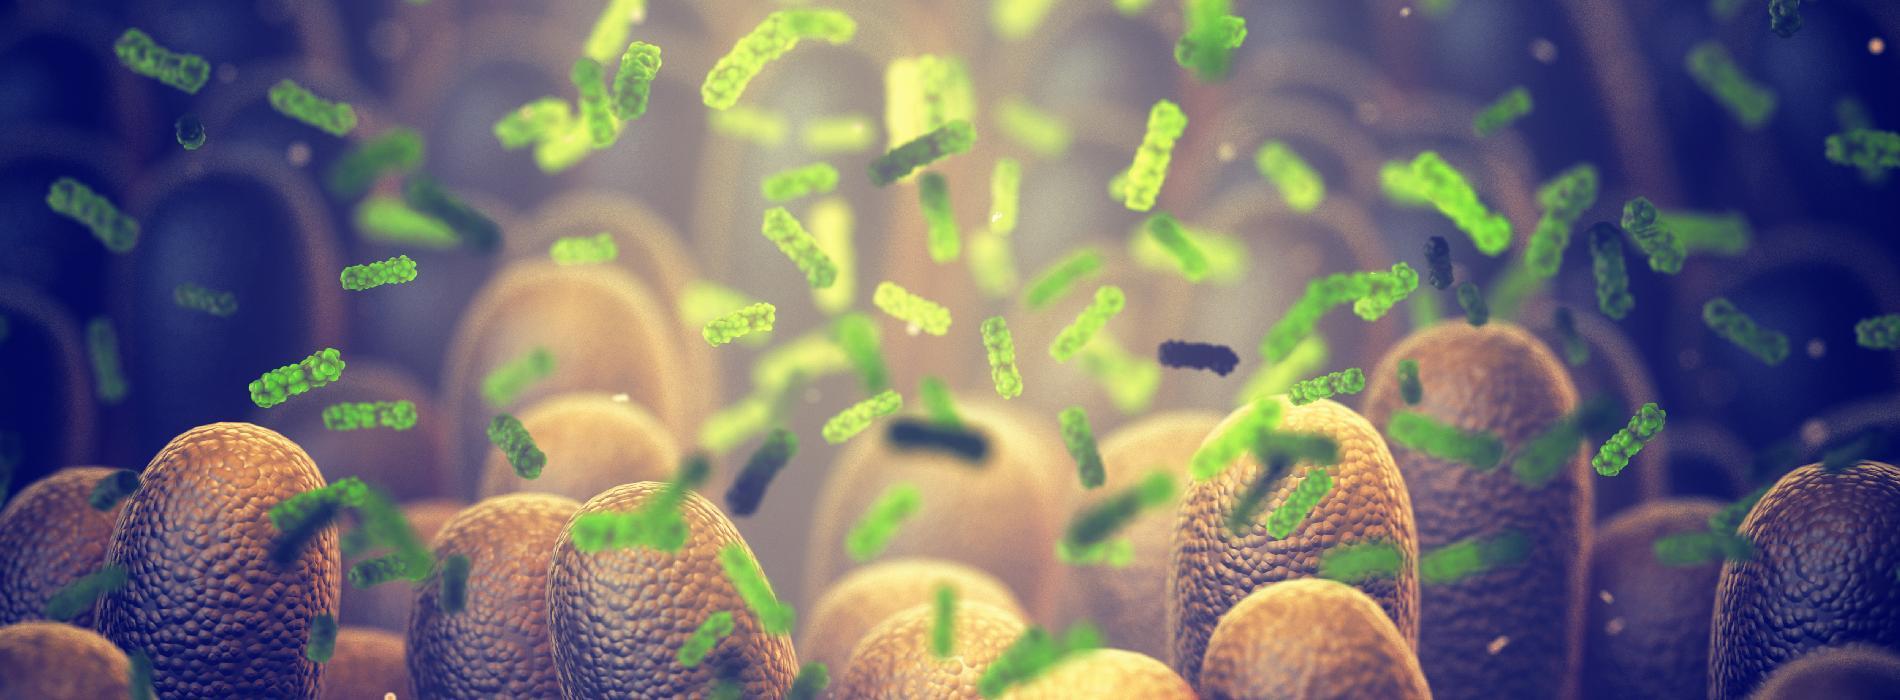 Jakie są skutki zarażenia gronkowcami (Staphylococcus)?